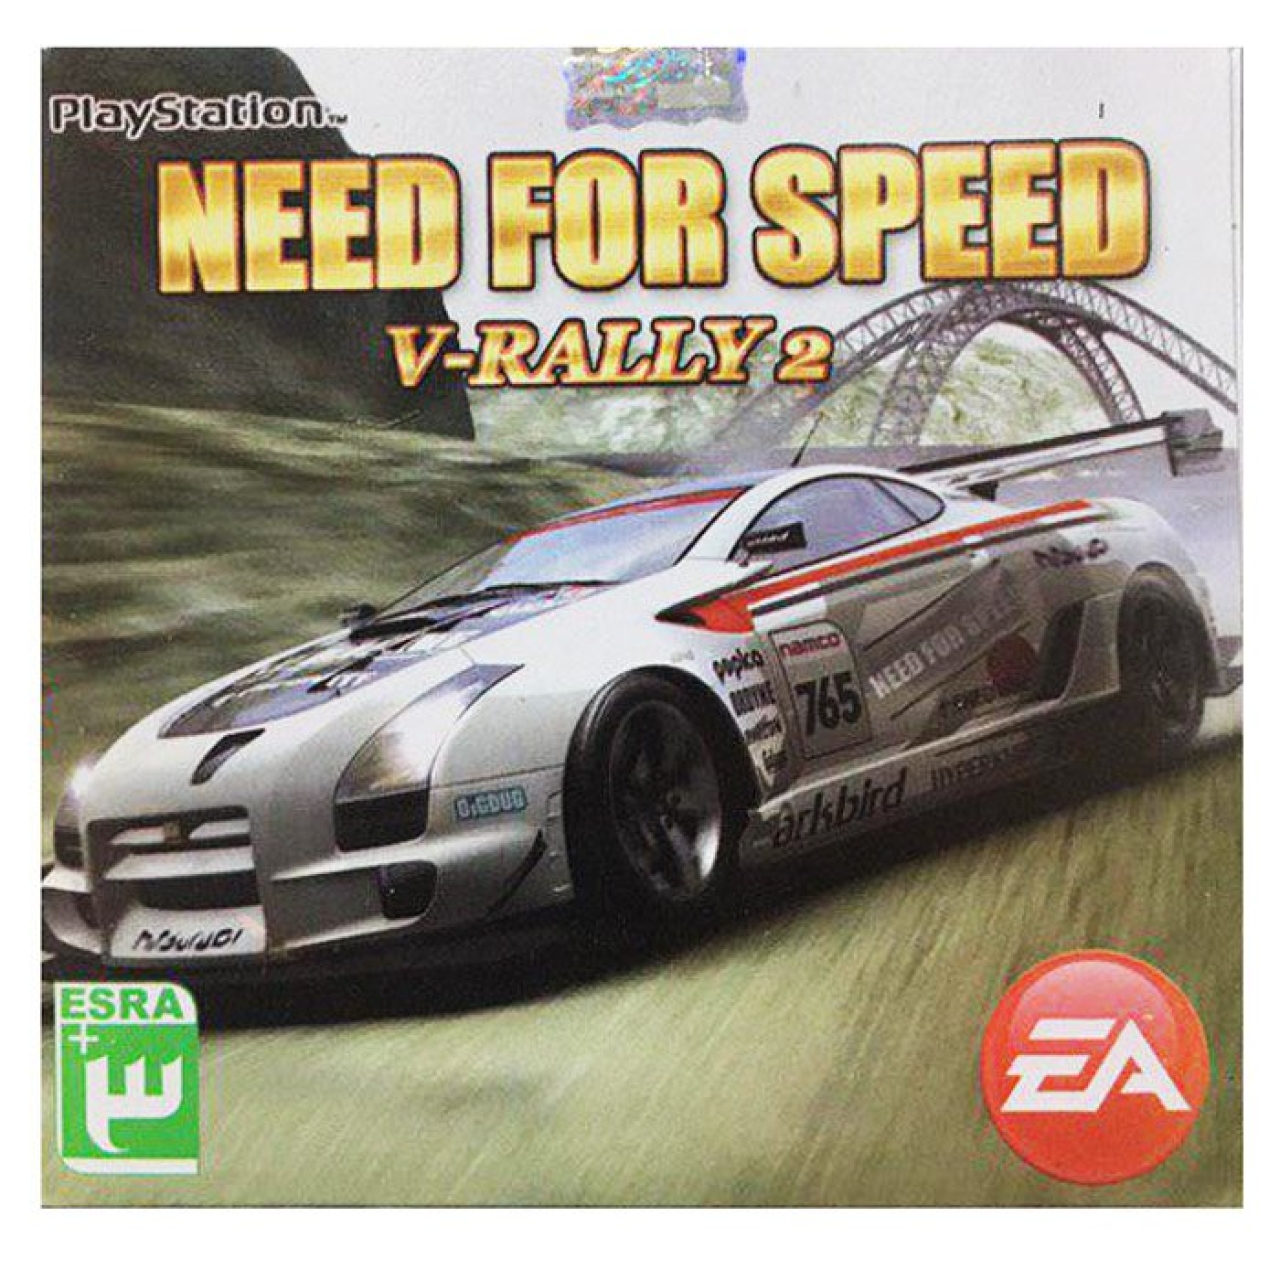 بازی Need for Speed V-Rally 2 مخصوص ps1